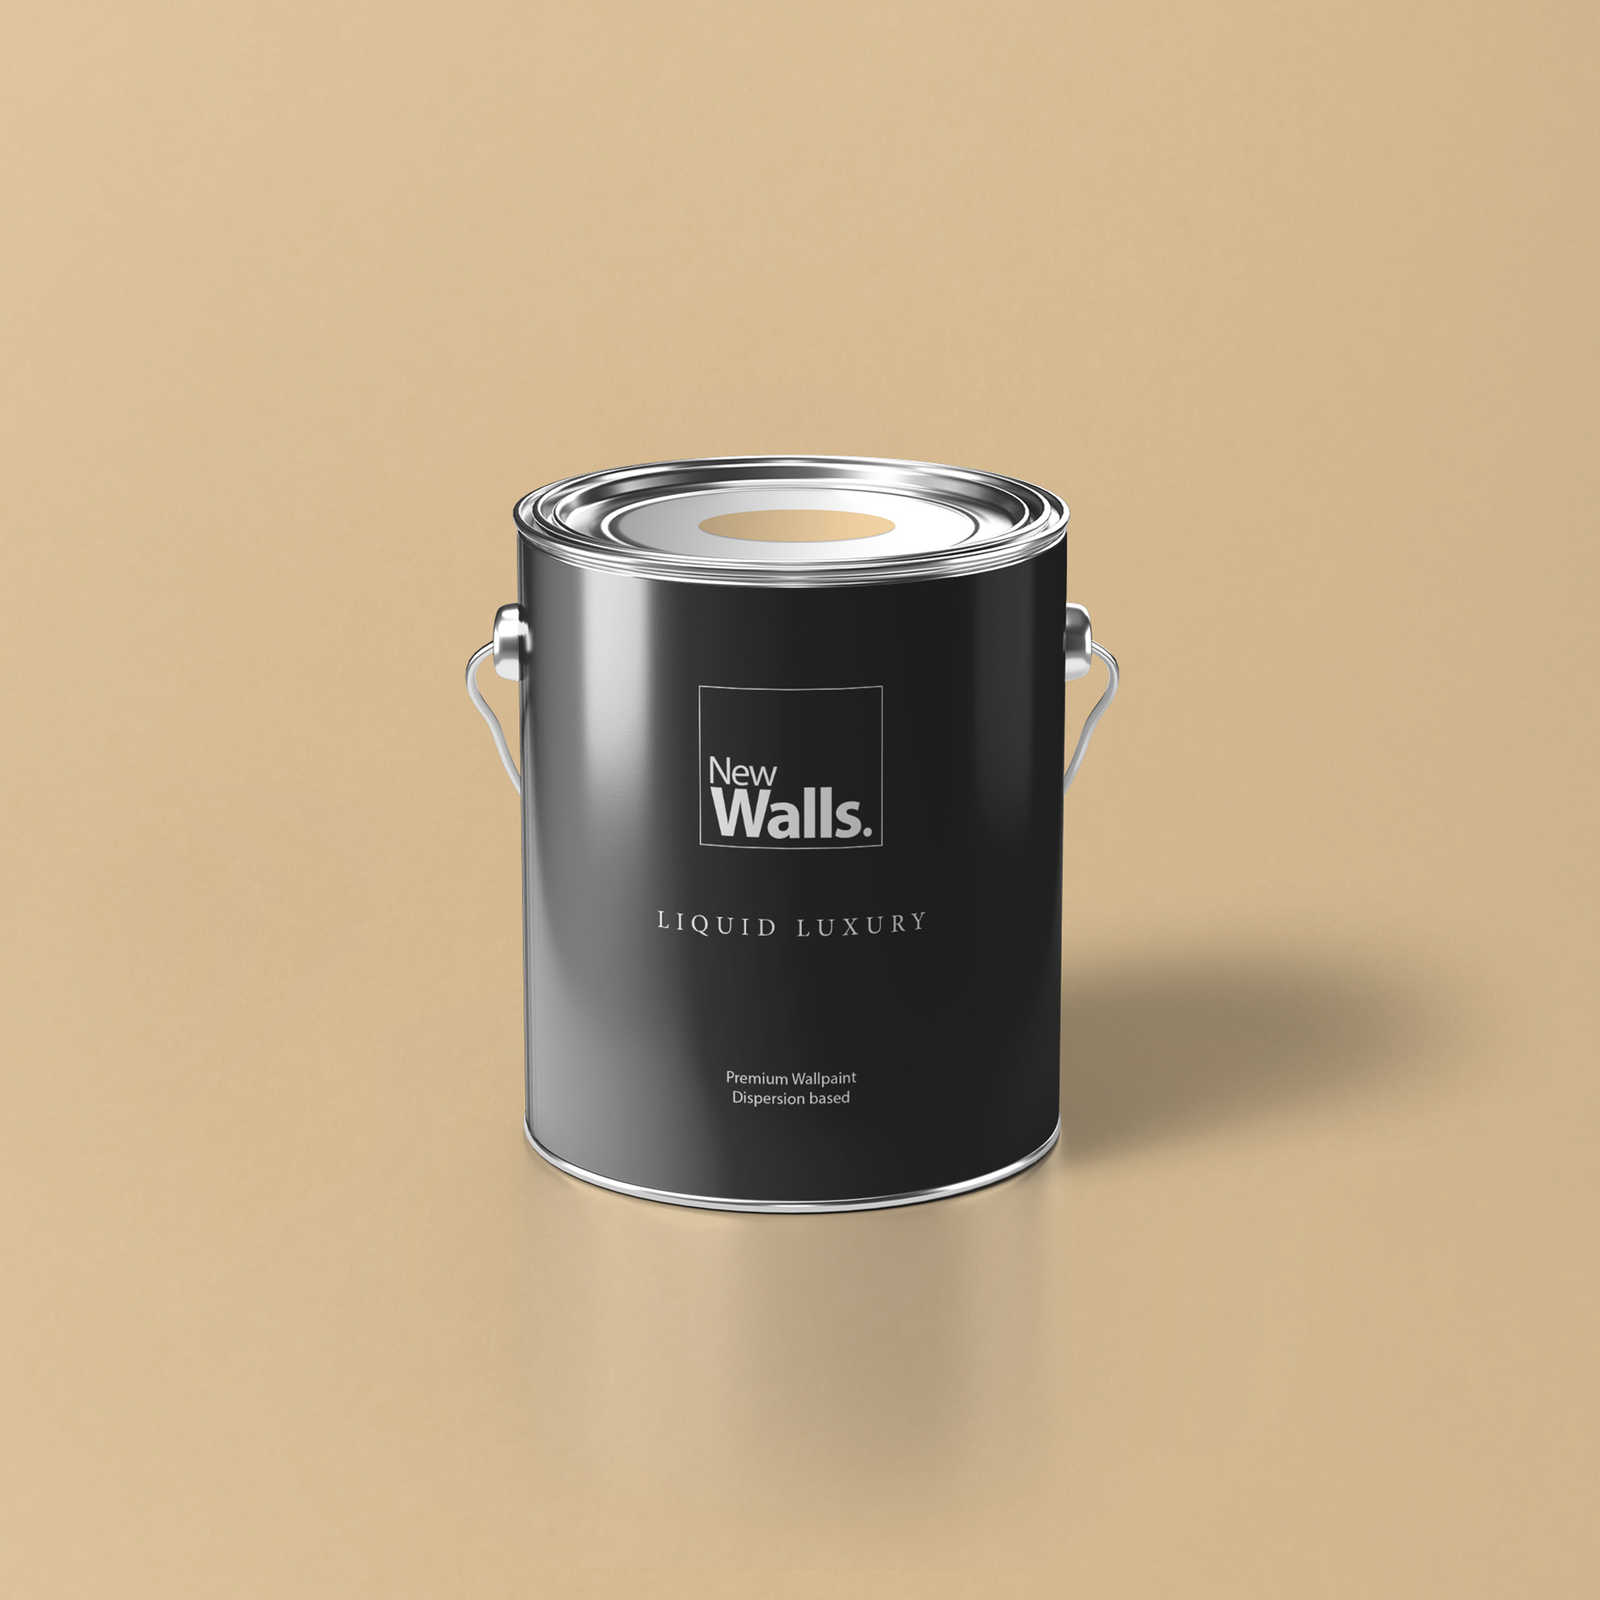 Premium Wall Paint Warm Light Beige »Beige Orange/Sassy Saffron« NW810 – 2.5 litre
